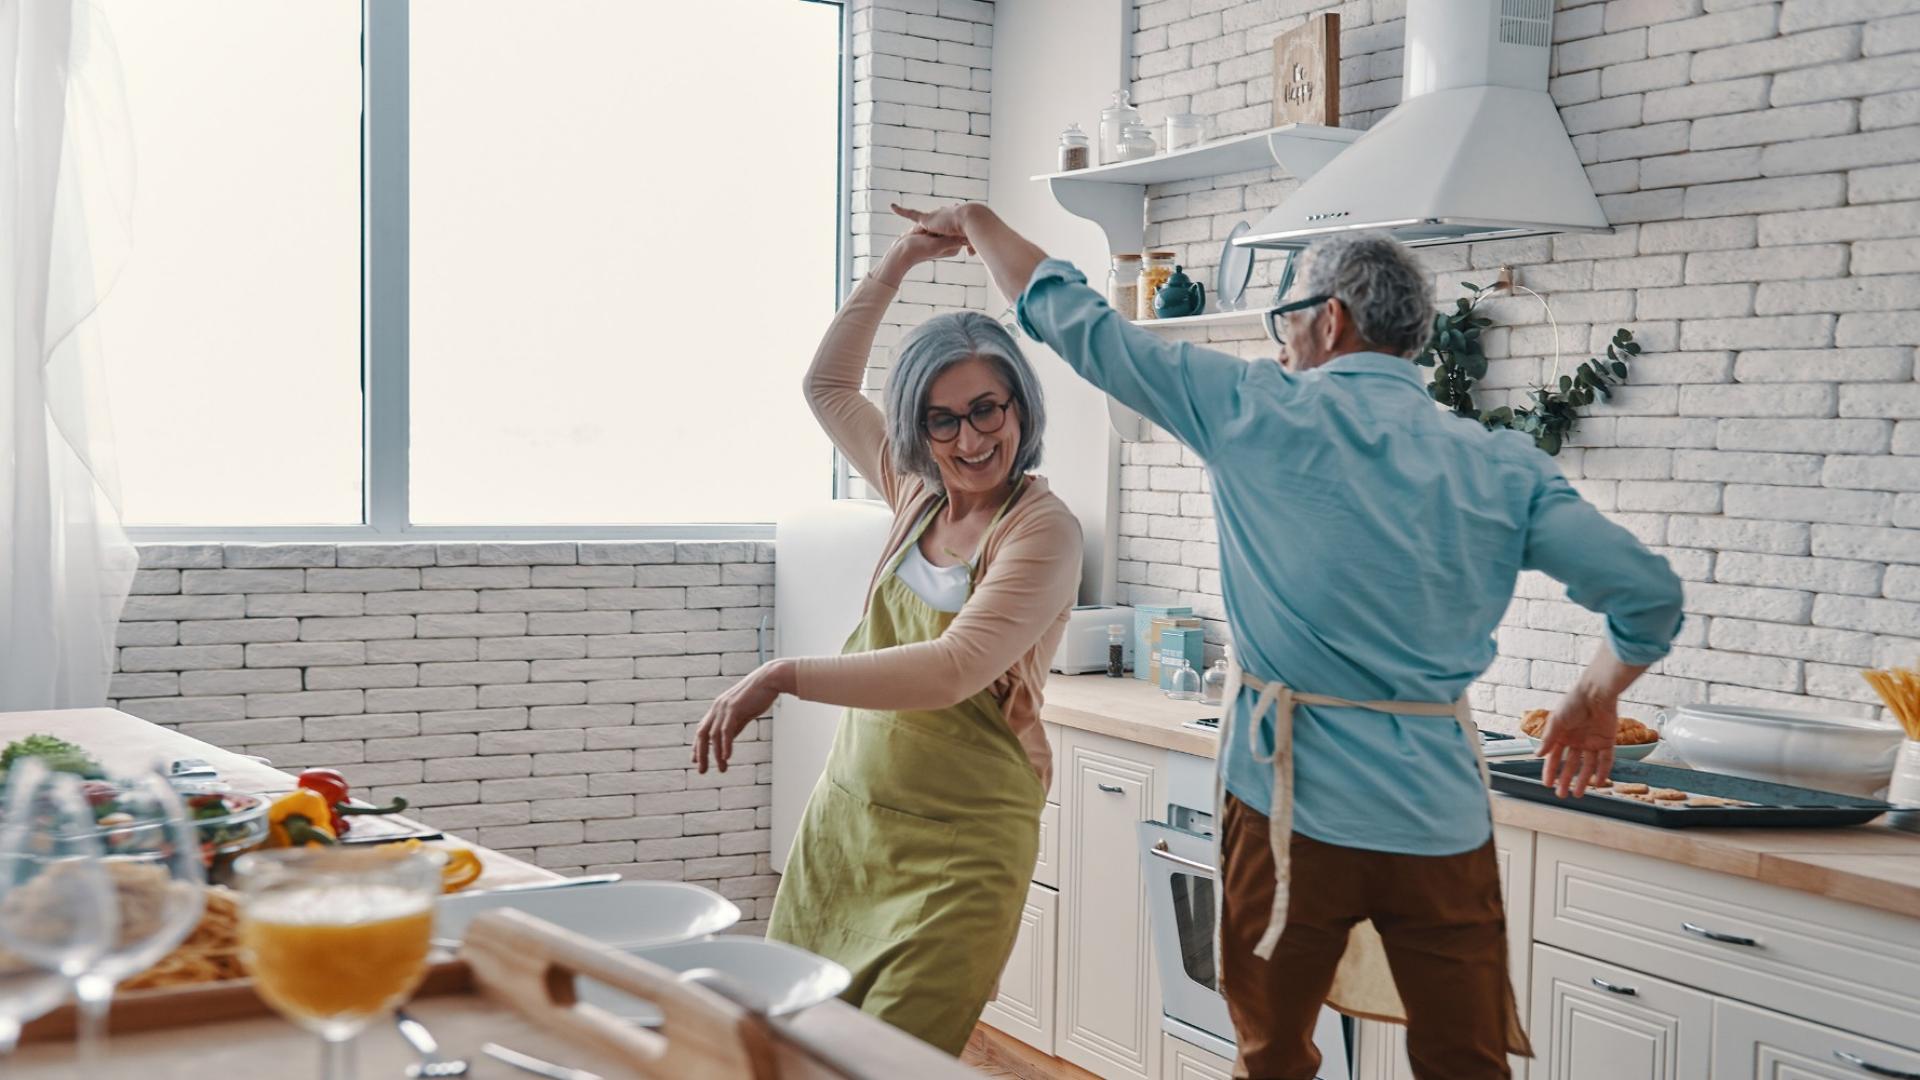 Auf dem Bild ist ein glückliches Pärchen abgebildet, das eine Sofortrente erhältz und in der Küche tanzt.